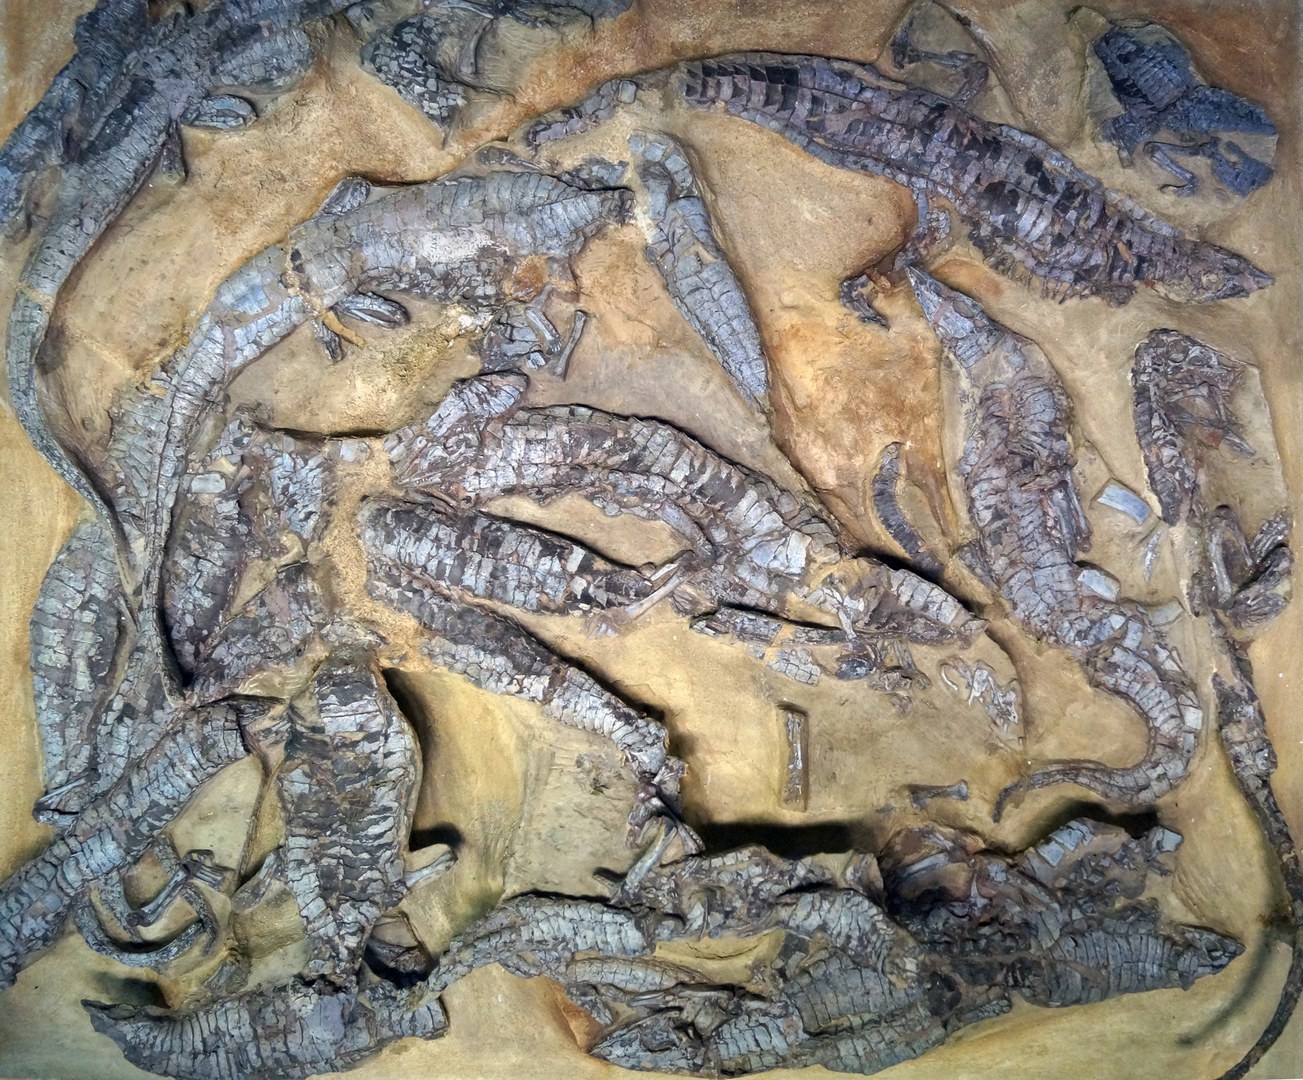 Die Ansammlung von Aetosaurus ferratus-Skeletten